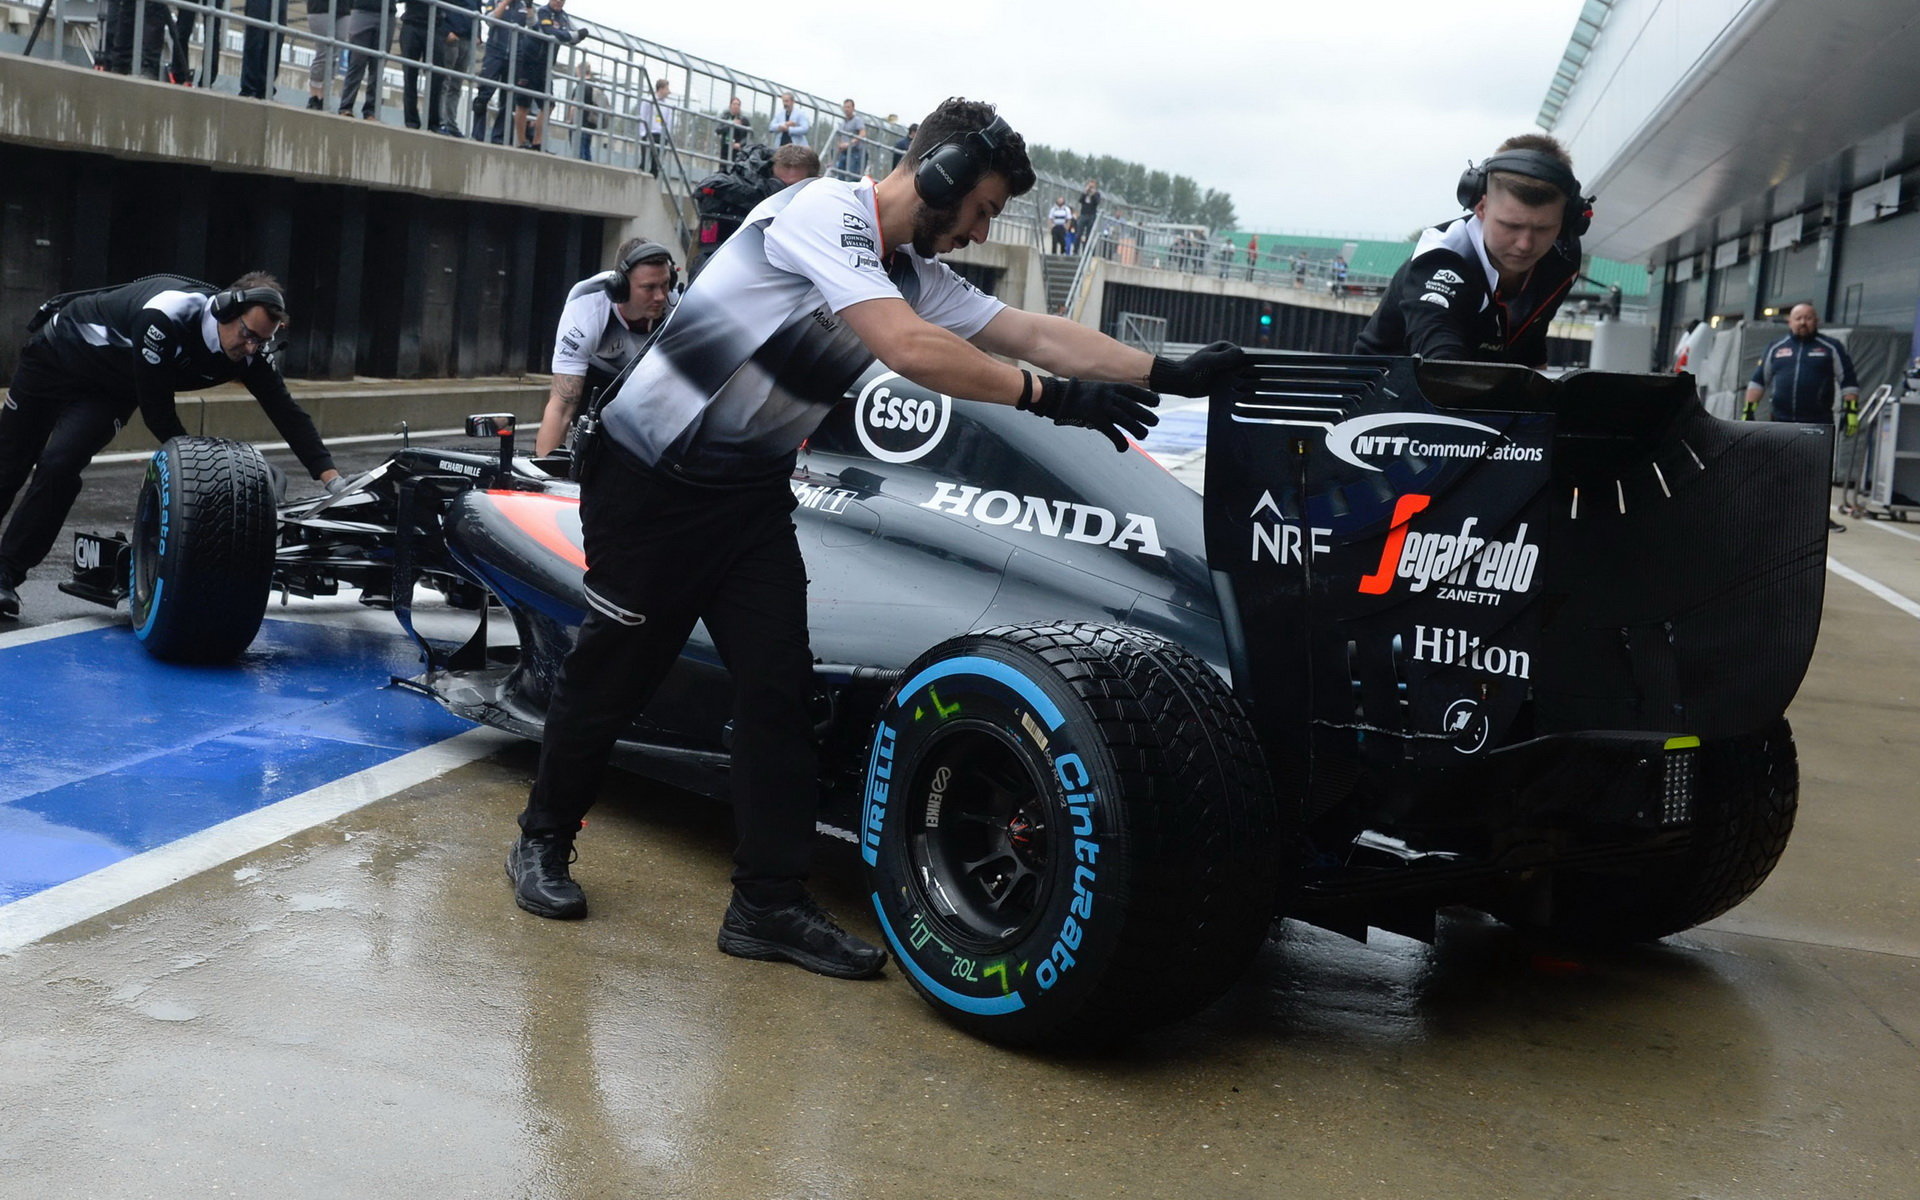 Fernando Alonso při posledních sezónních testech v Silverstone, první den